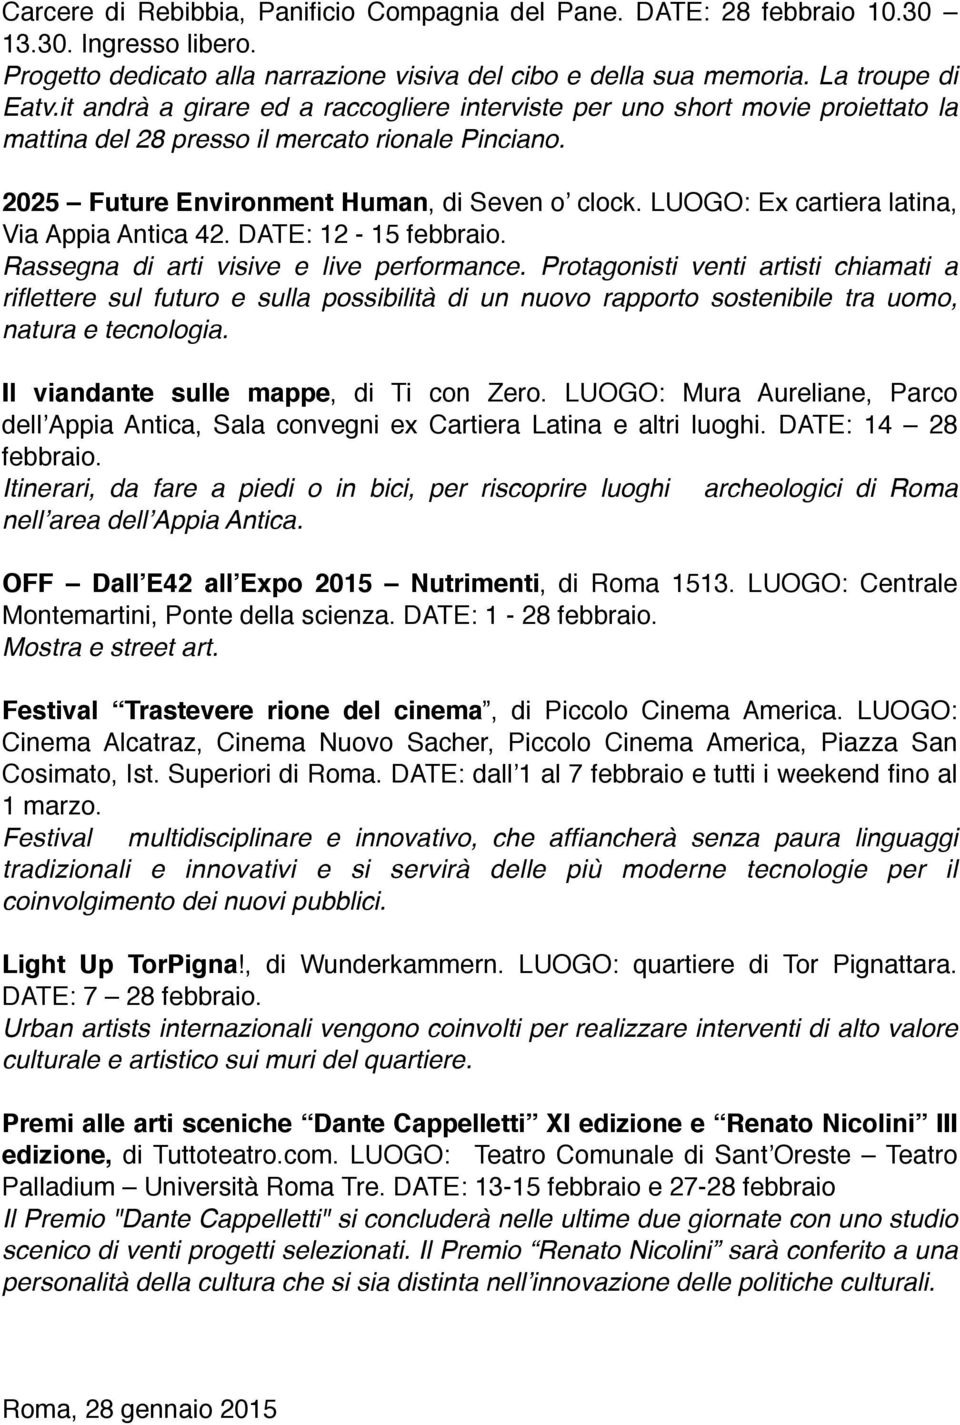 LUOGO: Ex cartiera latina, Via Appia Antica 42. DATE: 12-15 febbraio. Rassegna di arti visive e live performance.